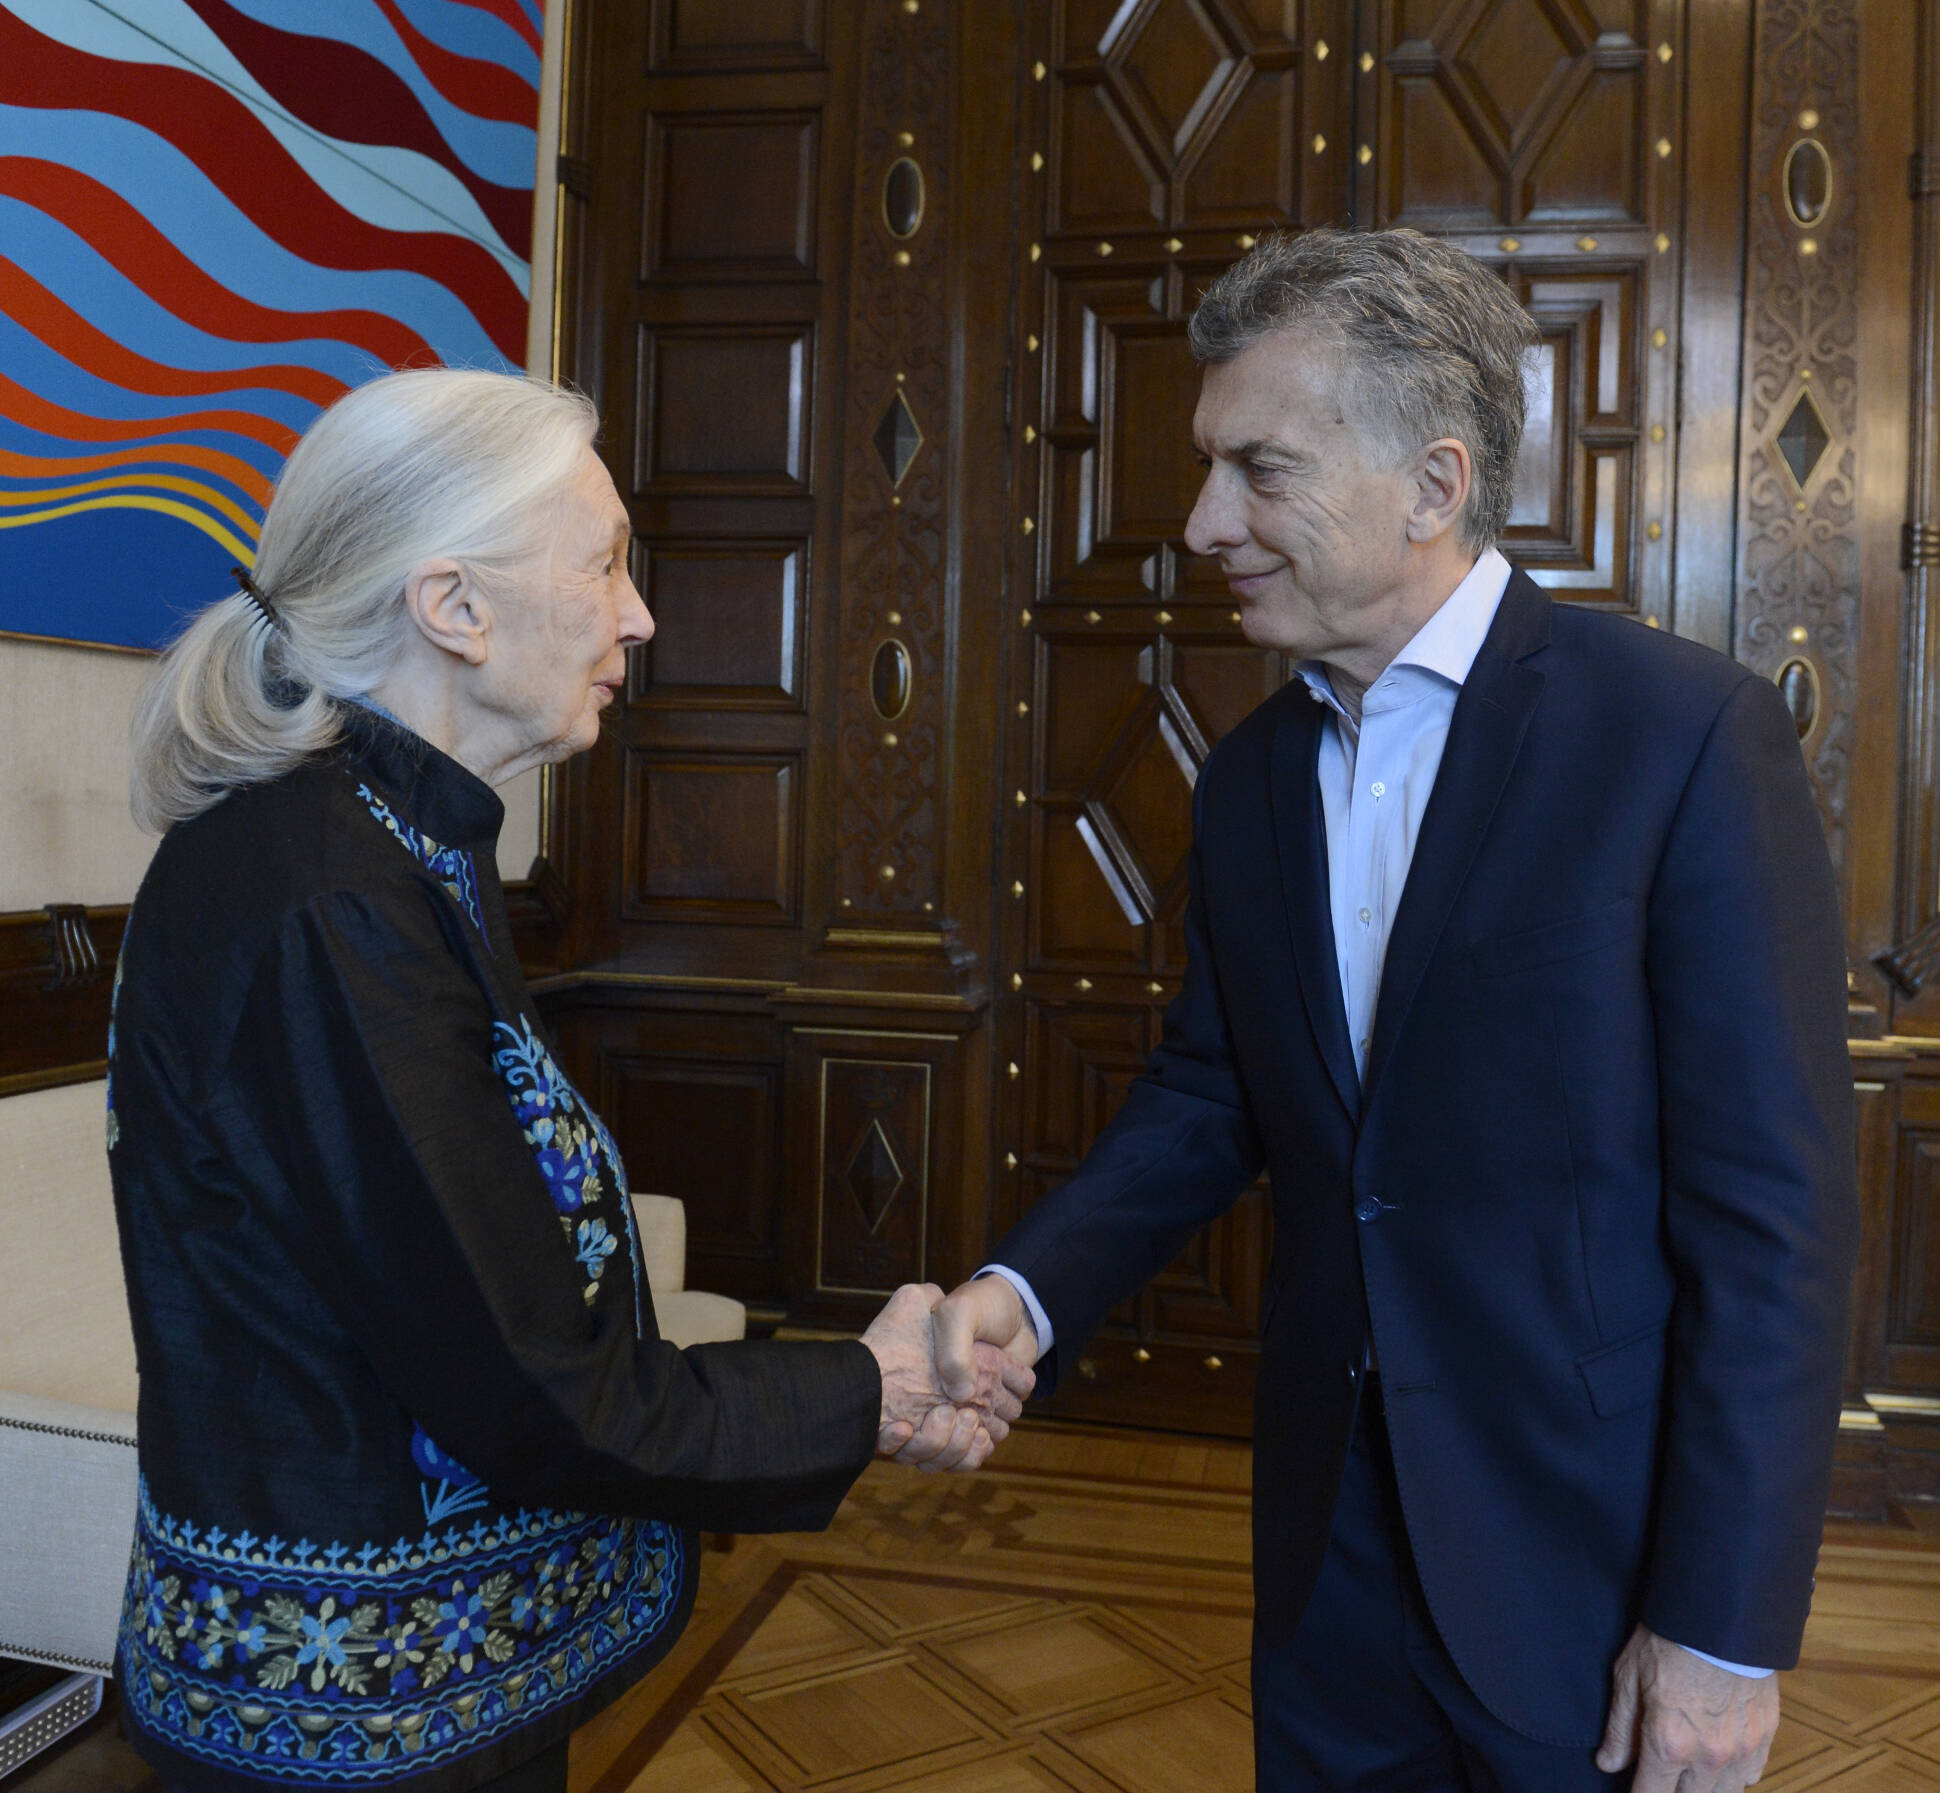 El Presidente recibió a la reconocida ambientalista y conservacionista Jane Goodall